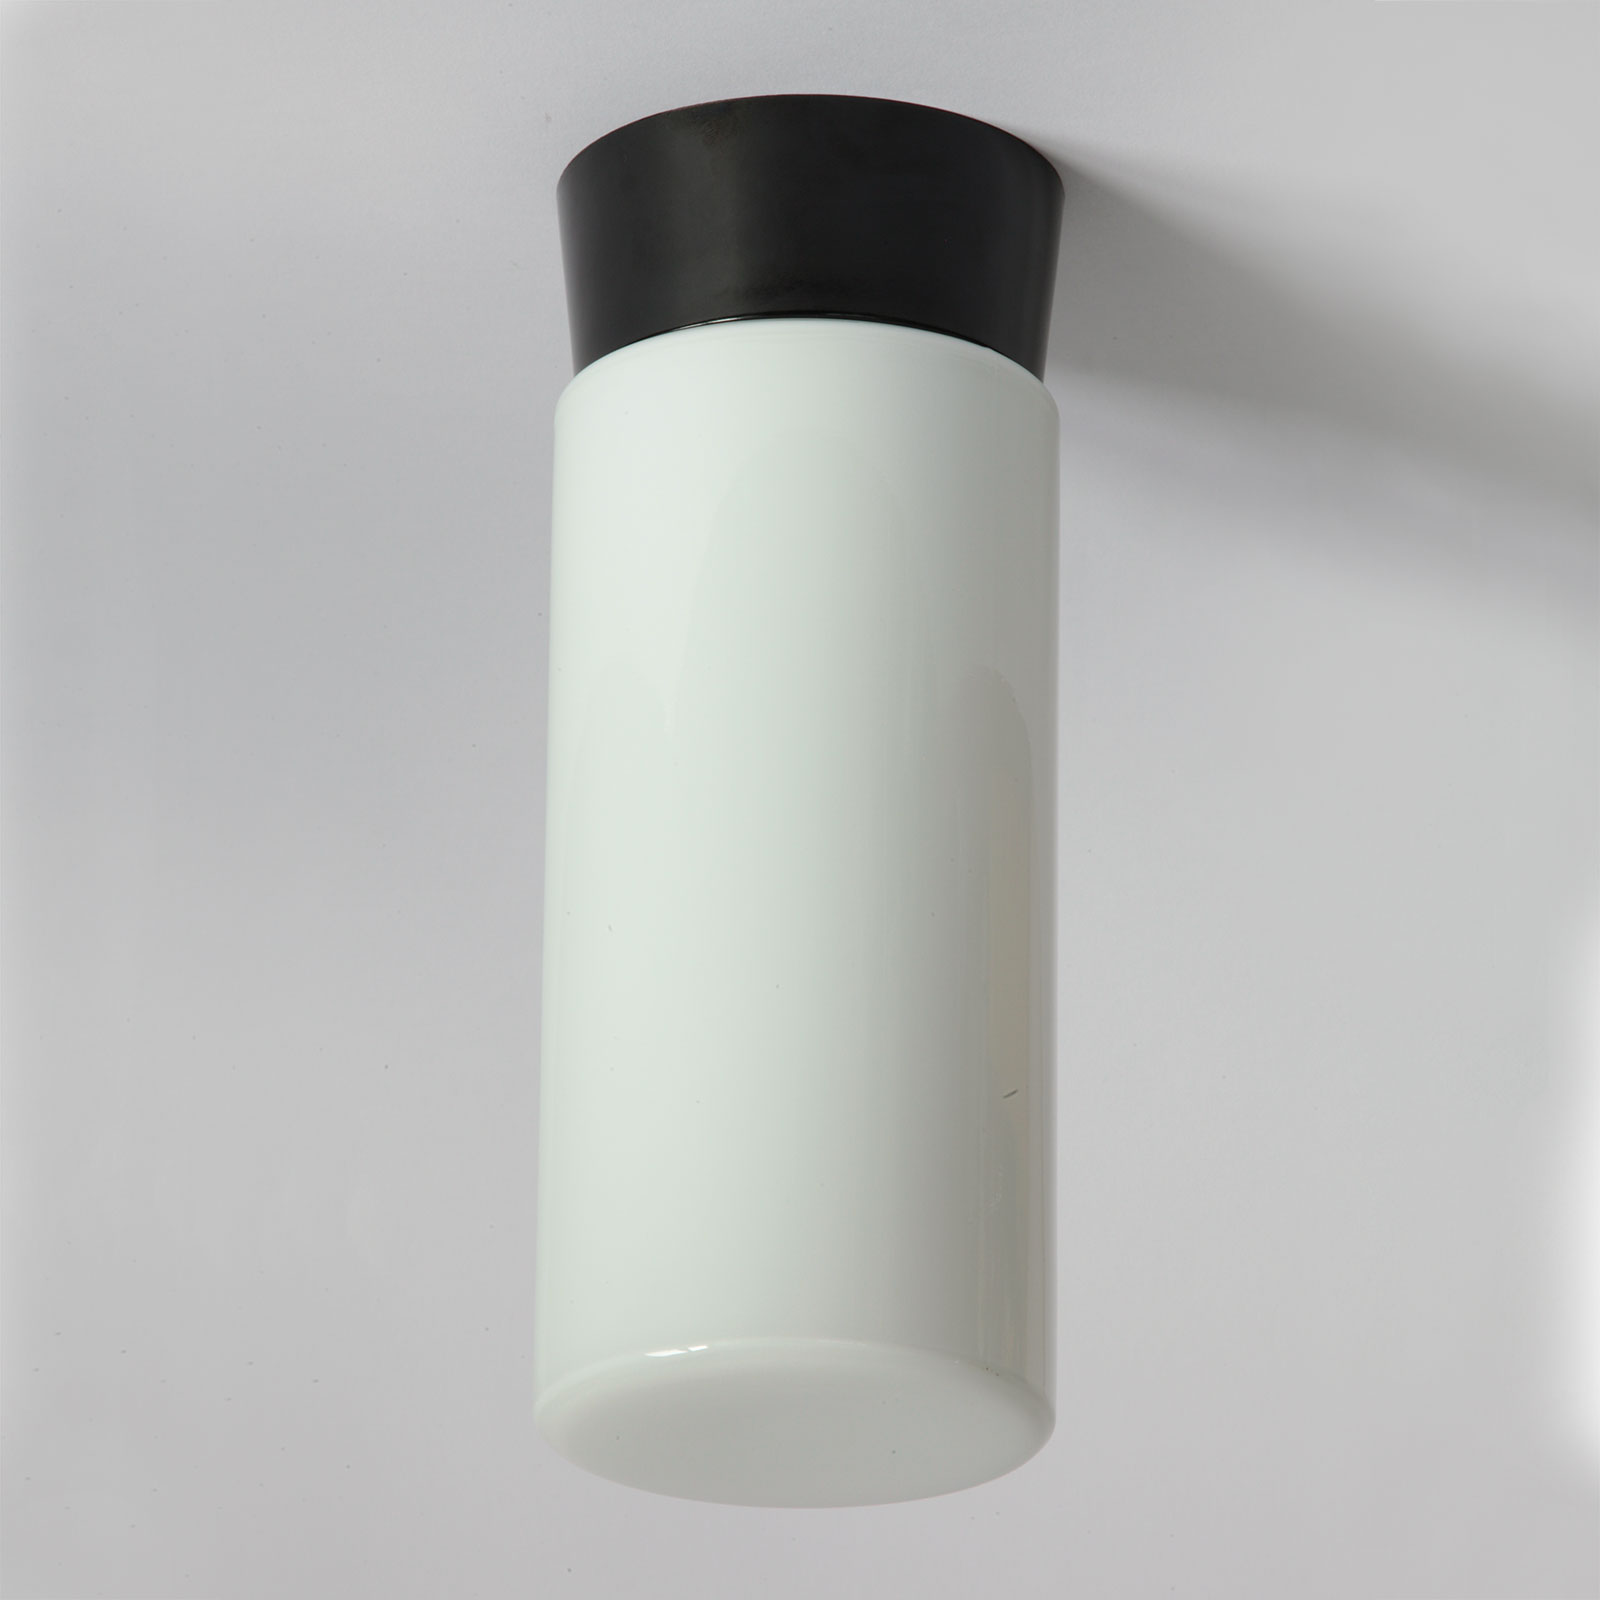 Zylinder-Deckenleuchte aus Opalglas mit Bakelit-Sockel: Gesamthöhe 28 cm